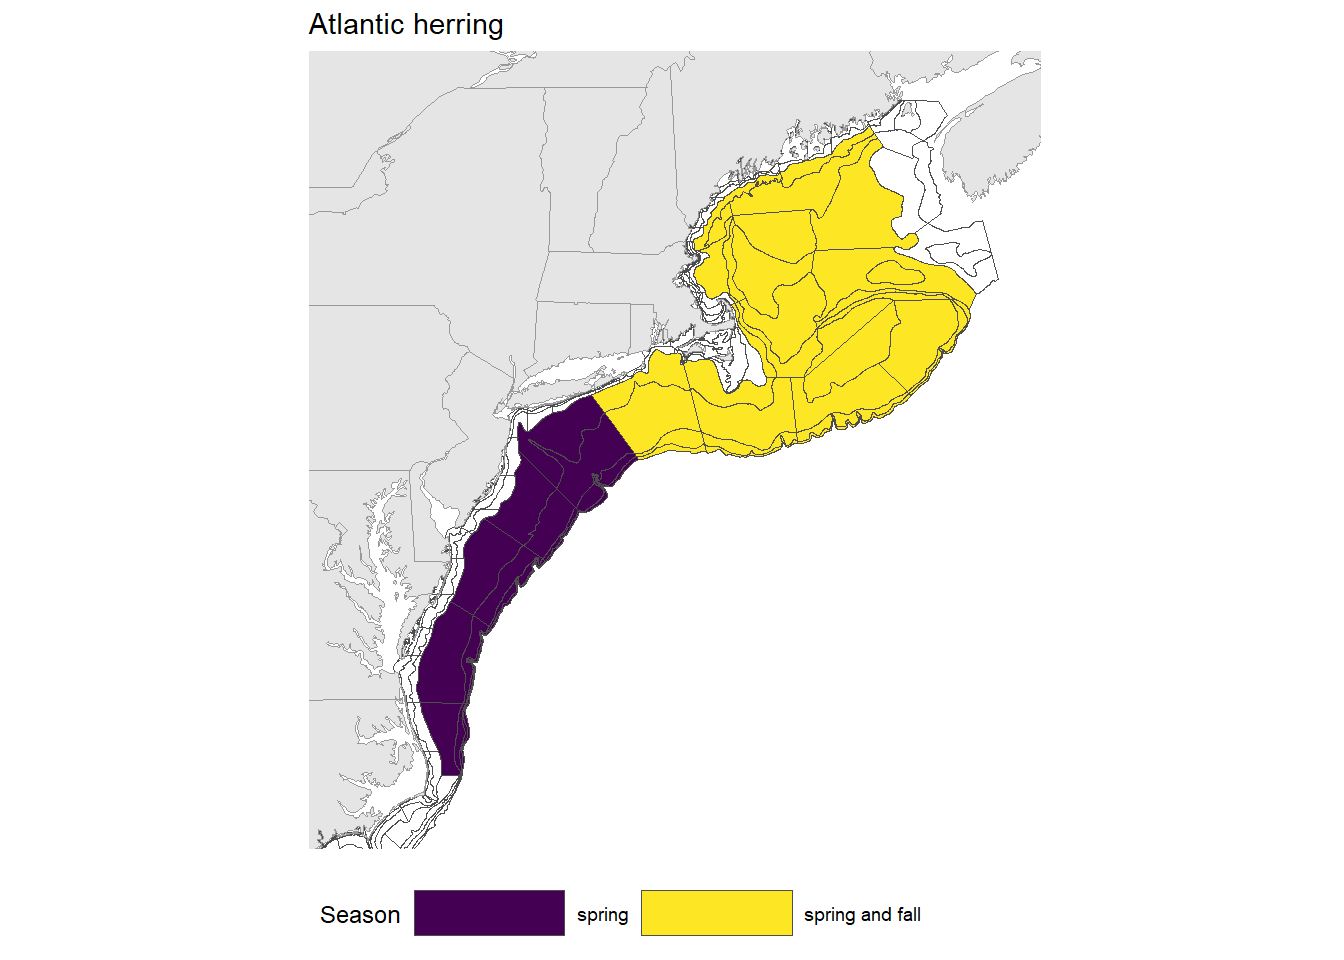 Strata map for the Atlantic herring (Clupea harengus) stock on the NE shelf.